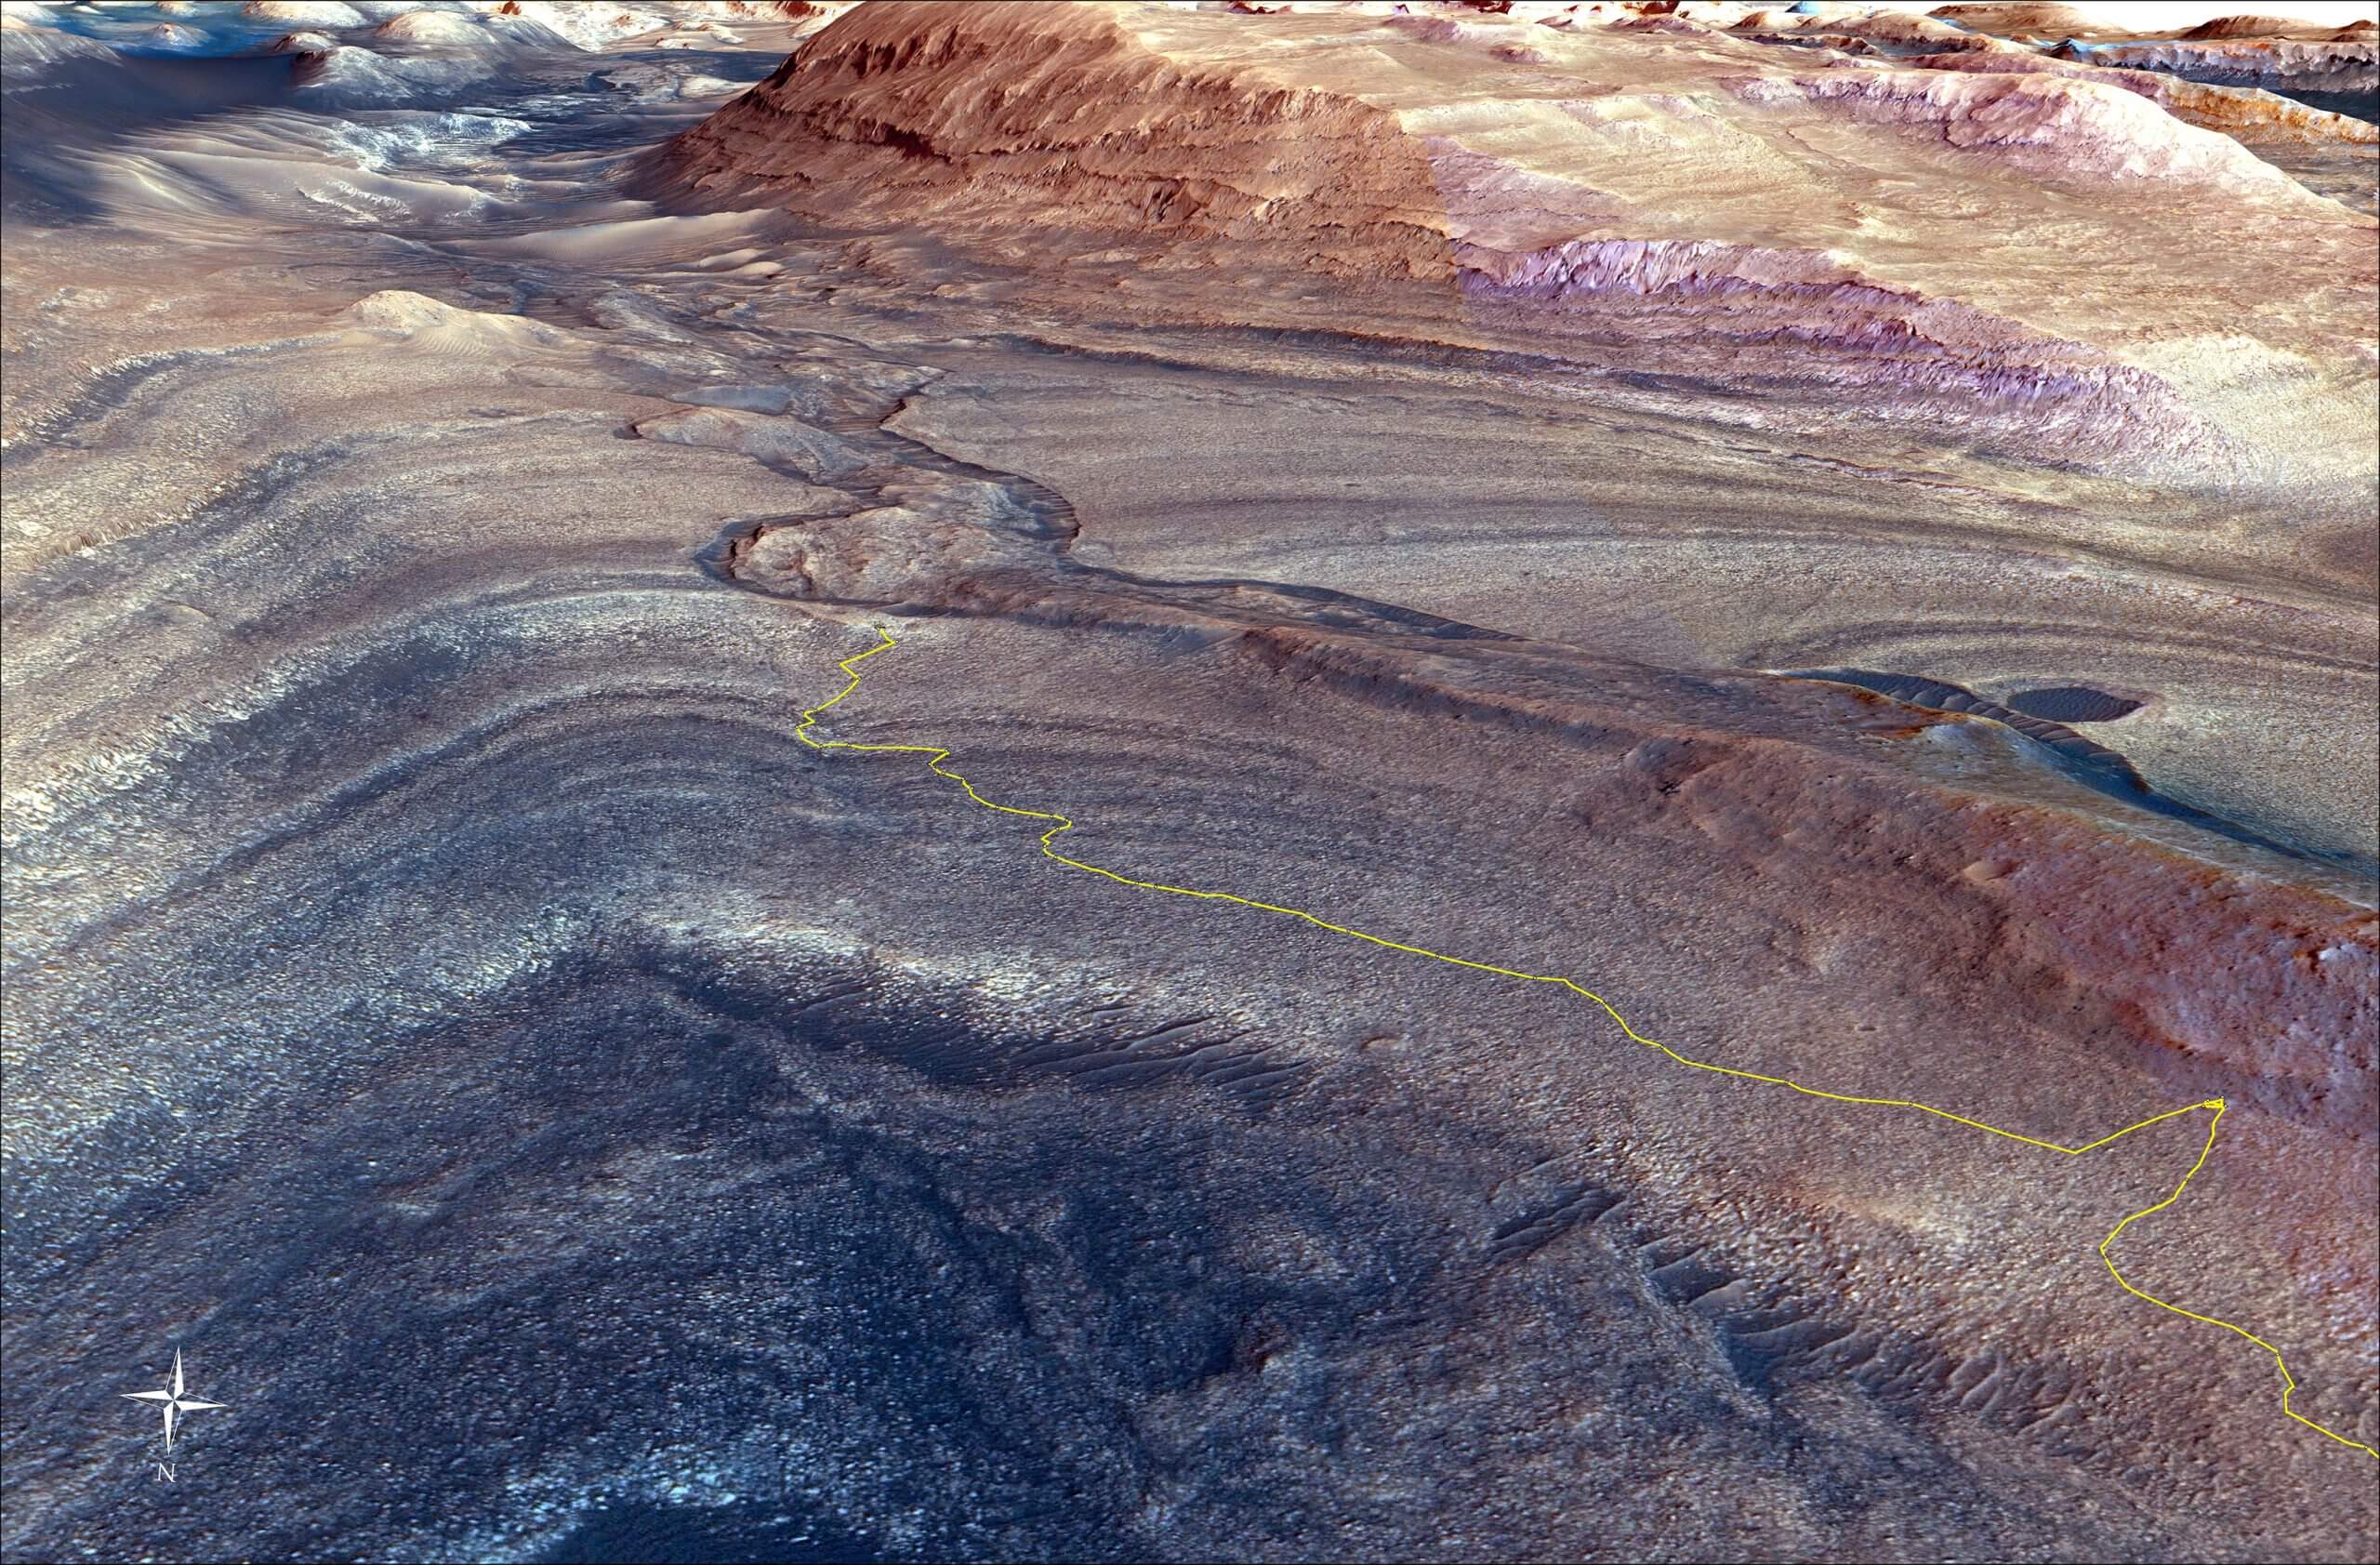 המסלול התלול שבו קיוריוסיטי נסע כדי להגיע לערוץ Gediz Vallis מצוין בצהוב בהחזיה הזאת. מימין למטה נמצאת הנקודה שבה הרכב פנה כדי להביט מקרוב ברכס שנוצר לפני זמן רב על ידי זרמי שפוכת ממעלה הר שארפ. קרדיט: NASA/JPL-Caltech/UC Berkeley